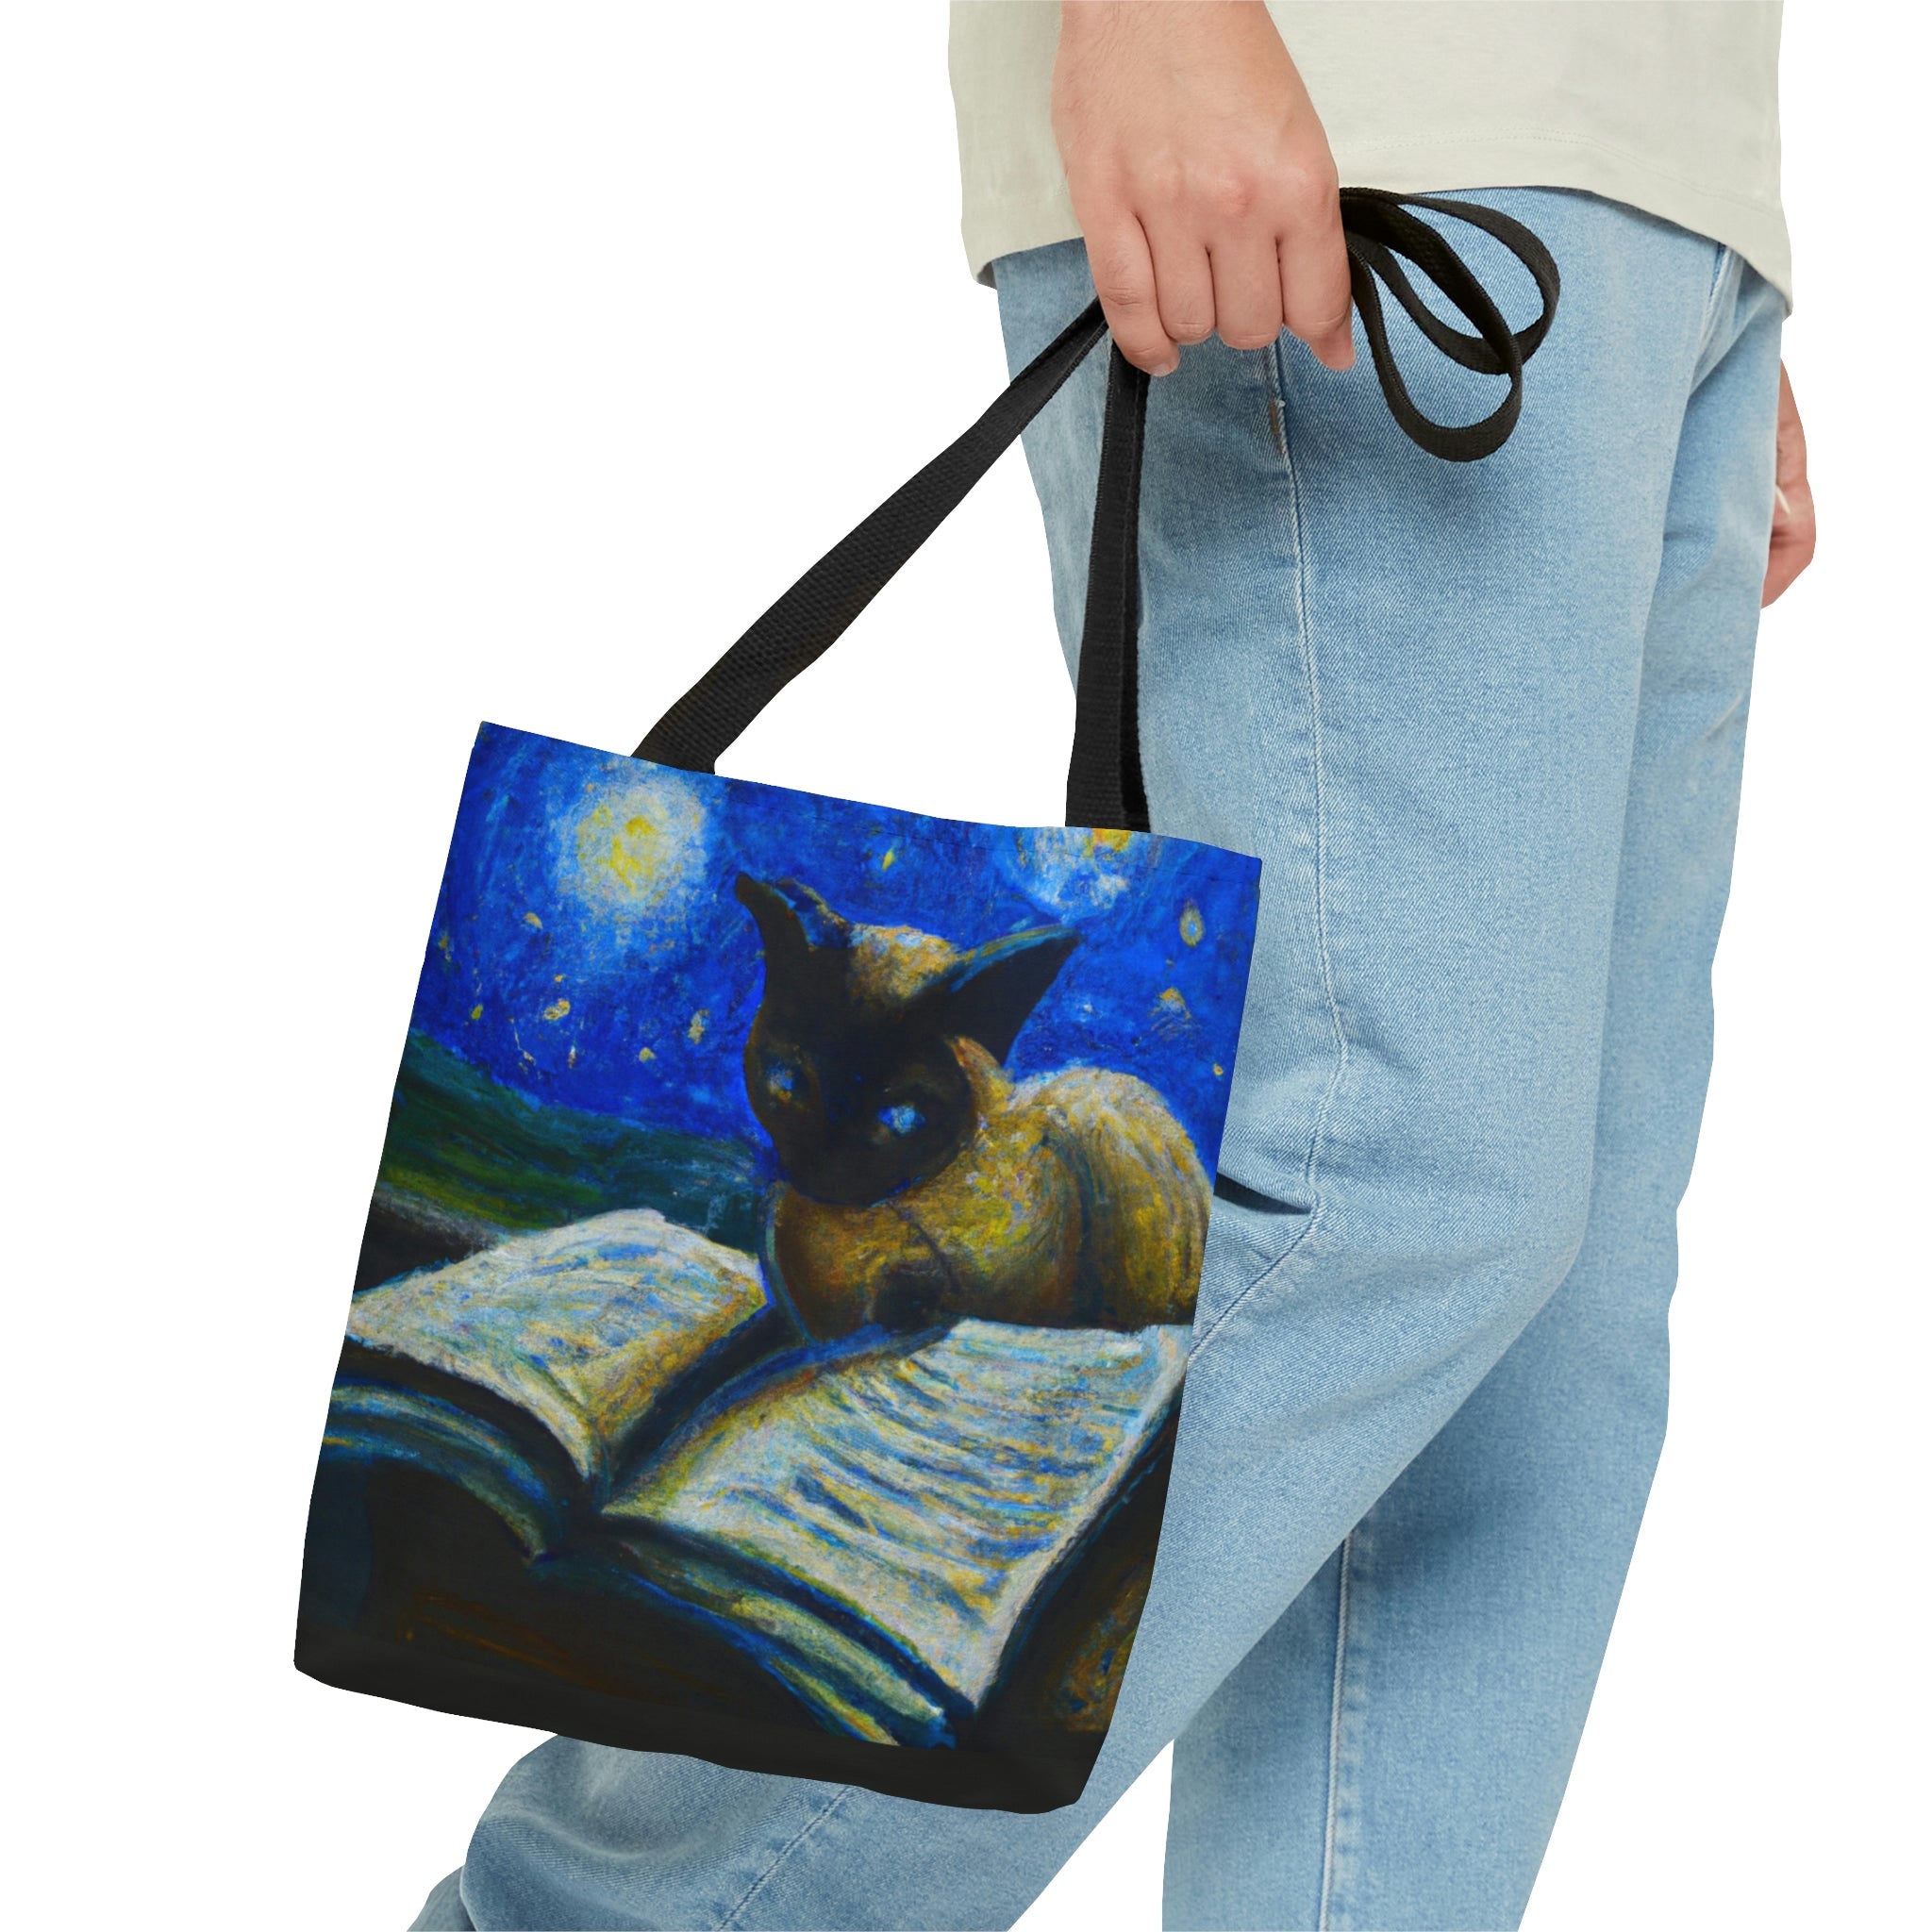 Celestial Cat Handbag